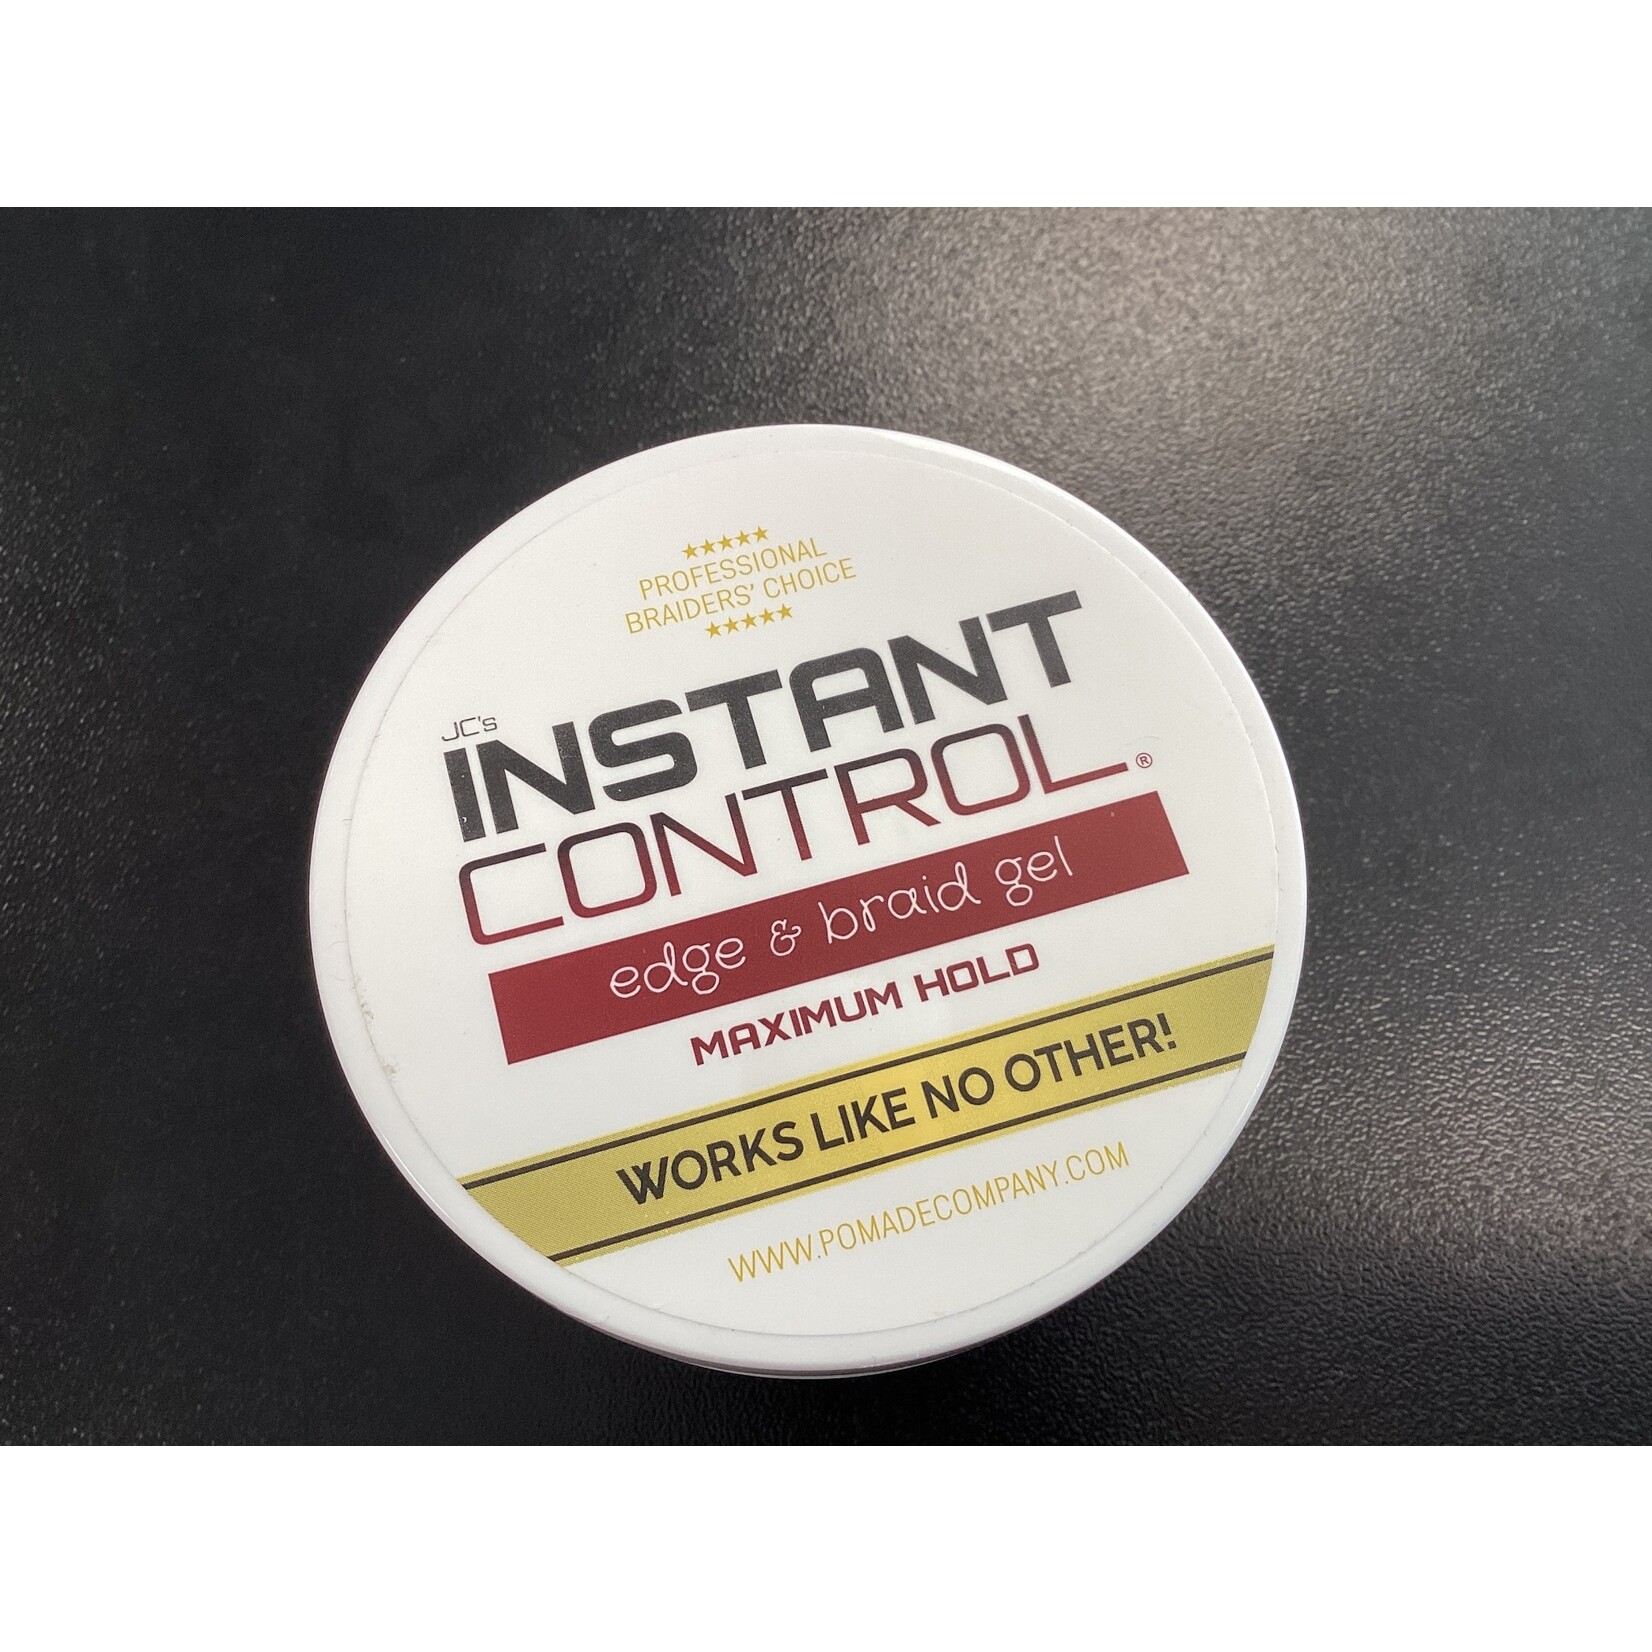 JC Trend Instant Control Edge & Braid Gel